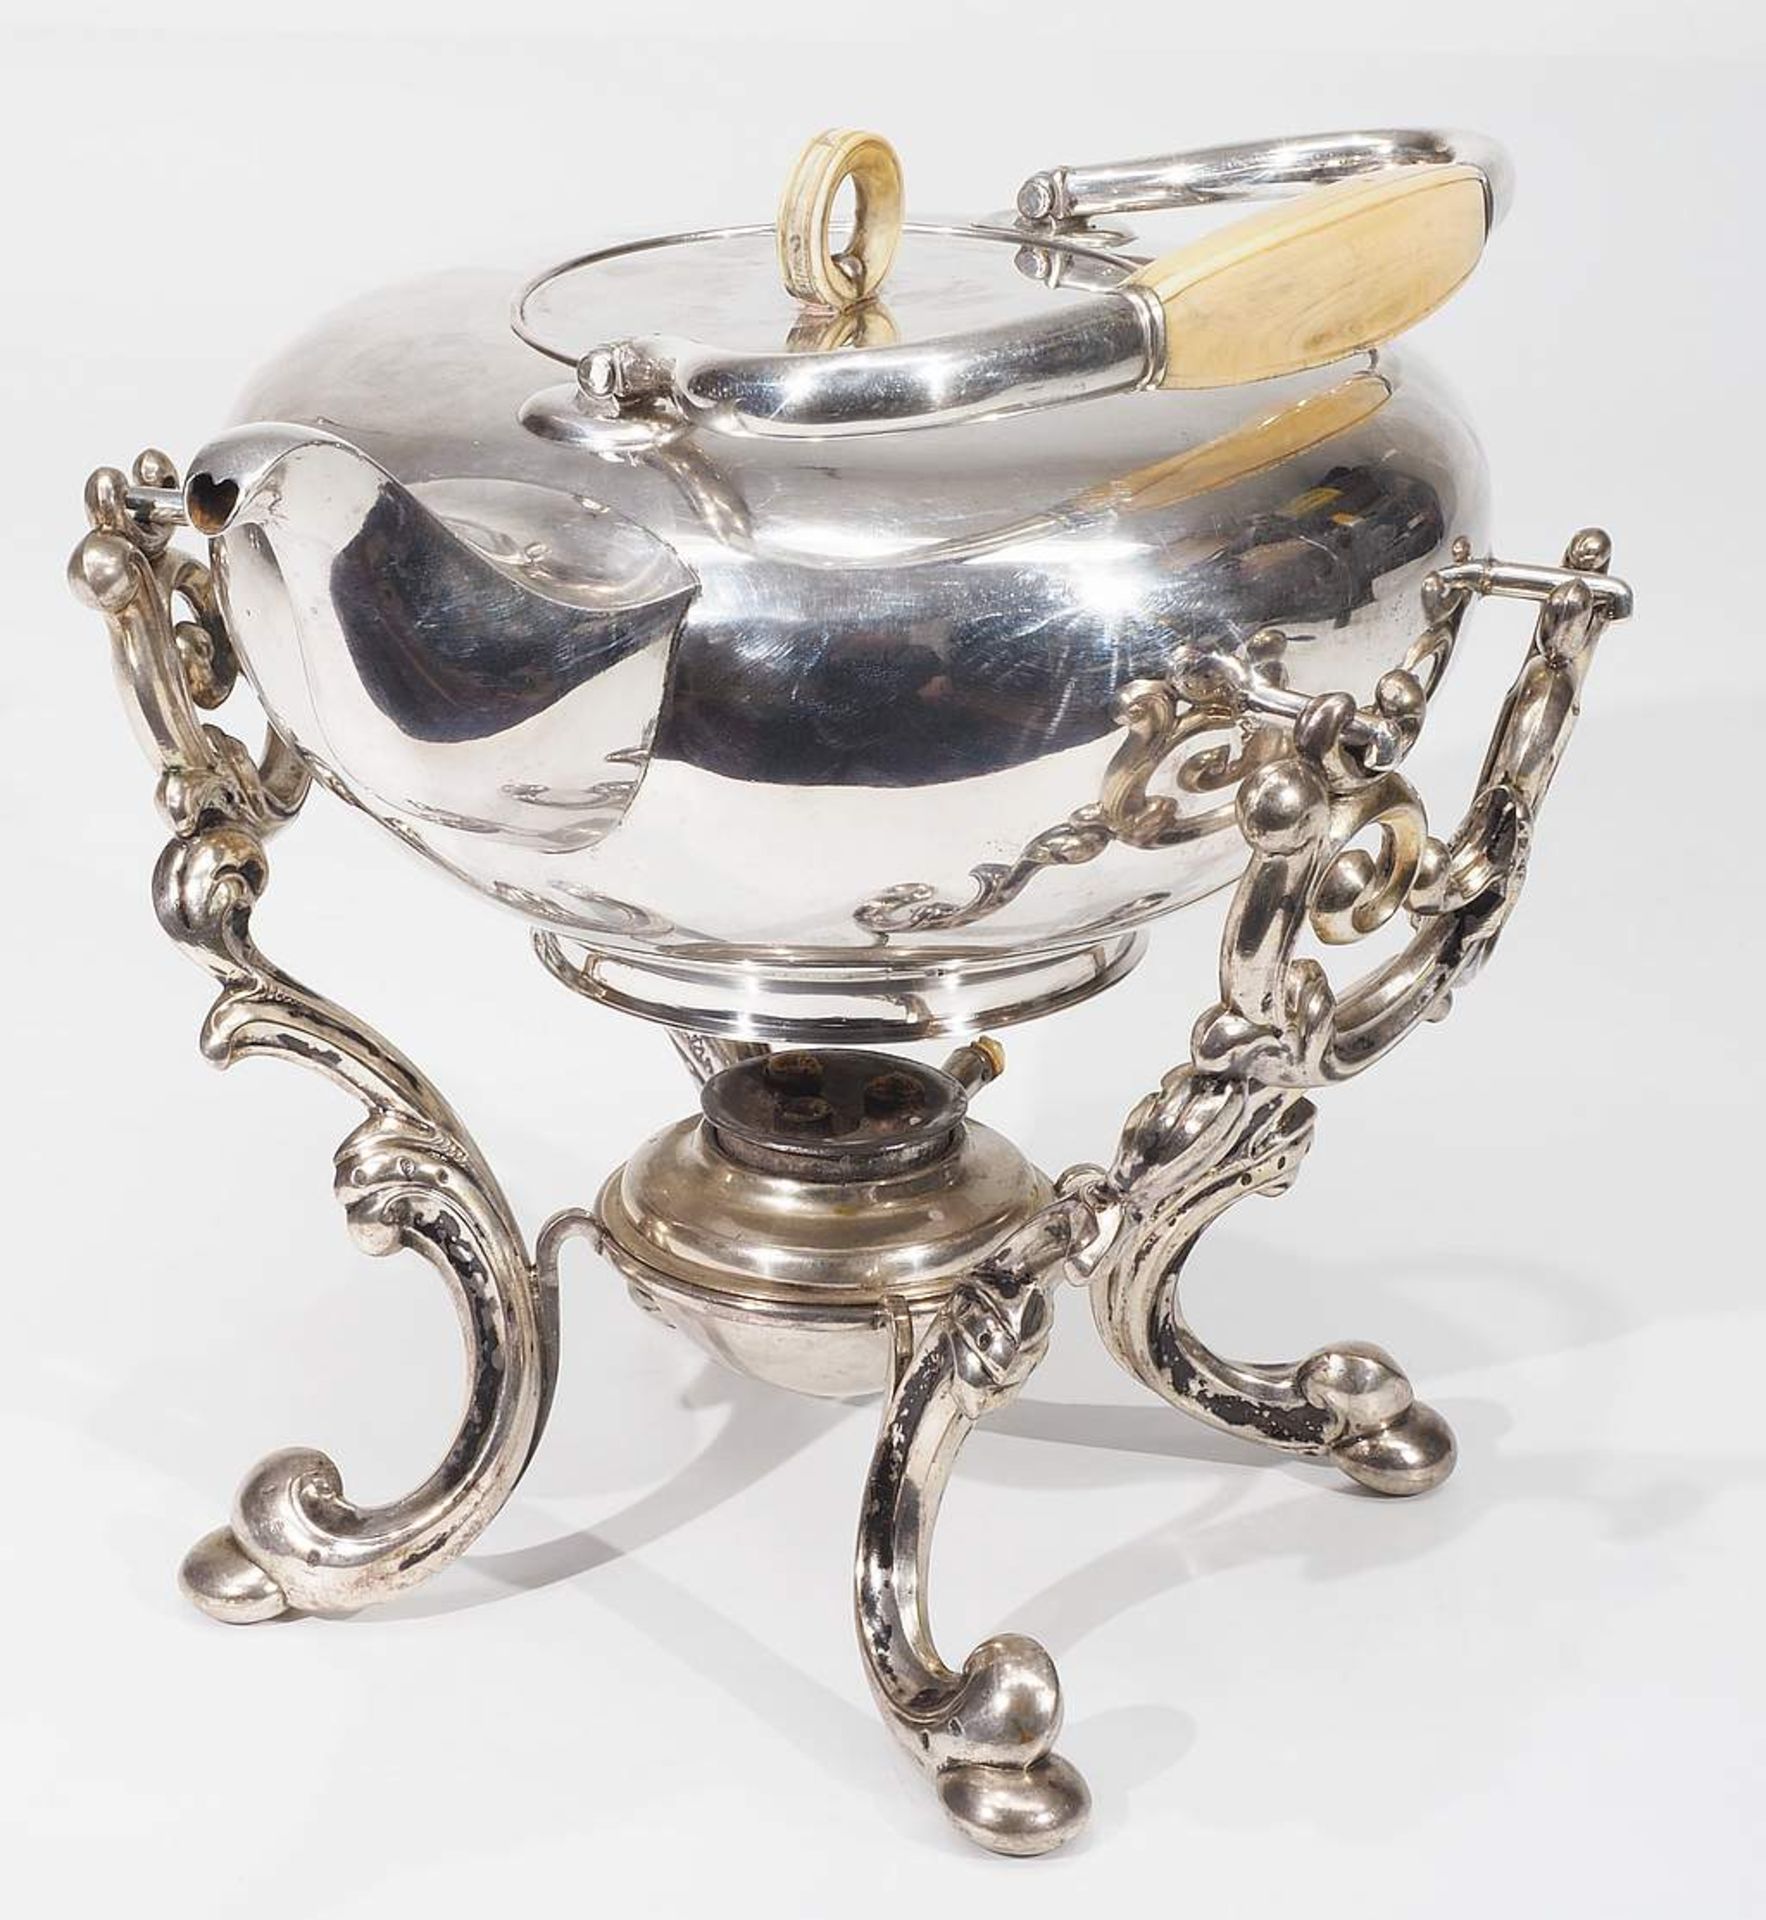 Teekessel auf Rechaud, 12 Lot Silber, um 1800 - etwa 1857, ( = 750er Silber ). Hofjuwelier Haller & - Bild 3 aus 7